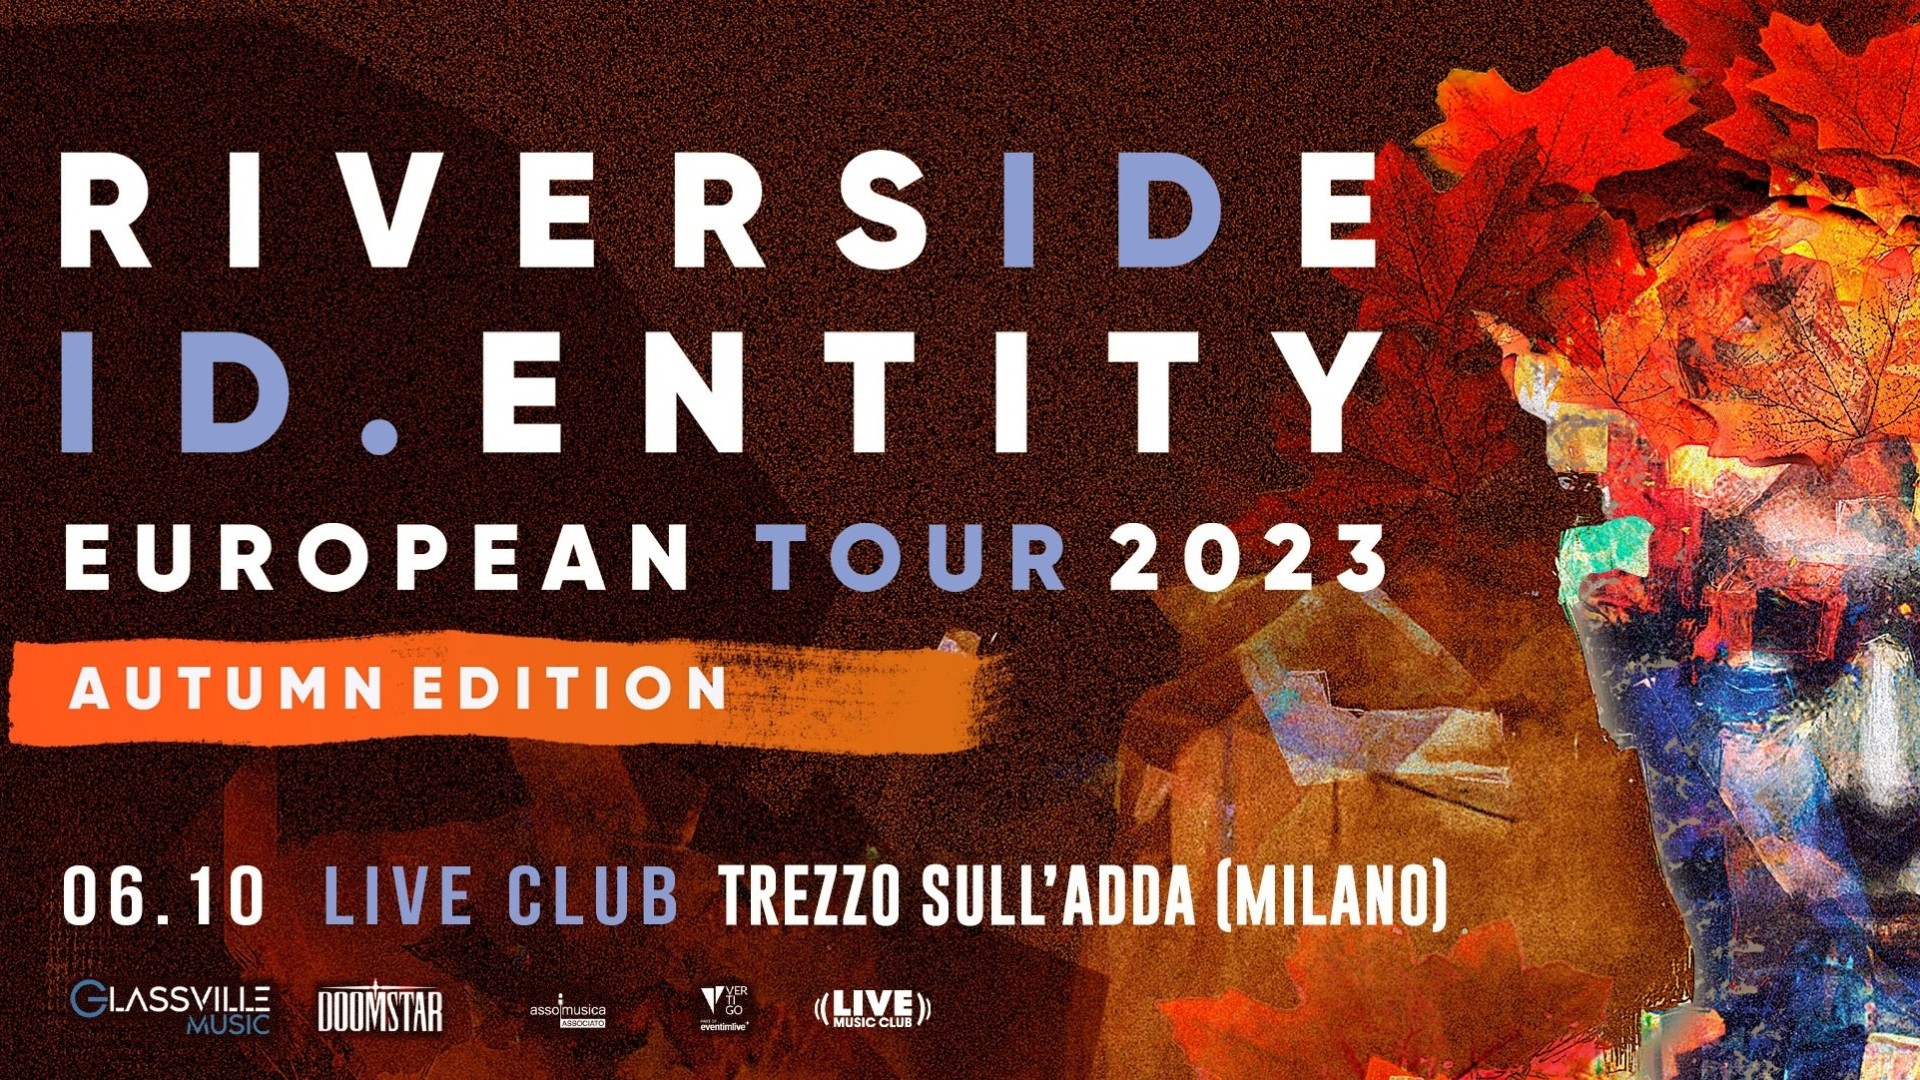 Riverside "ID.Entity European Tour 2023"